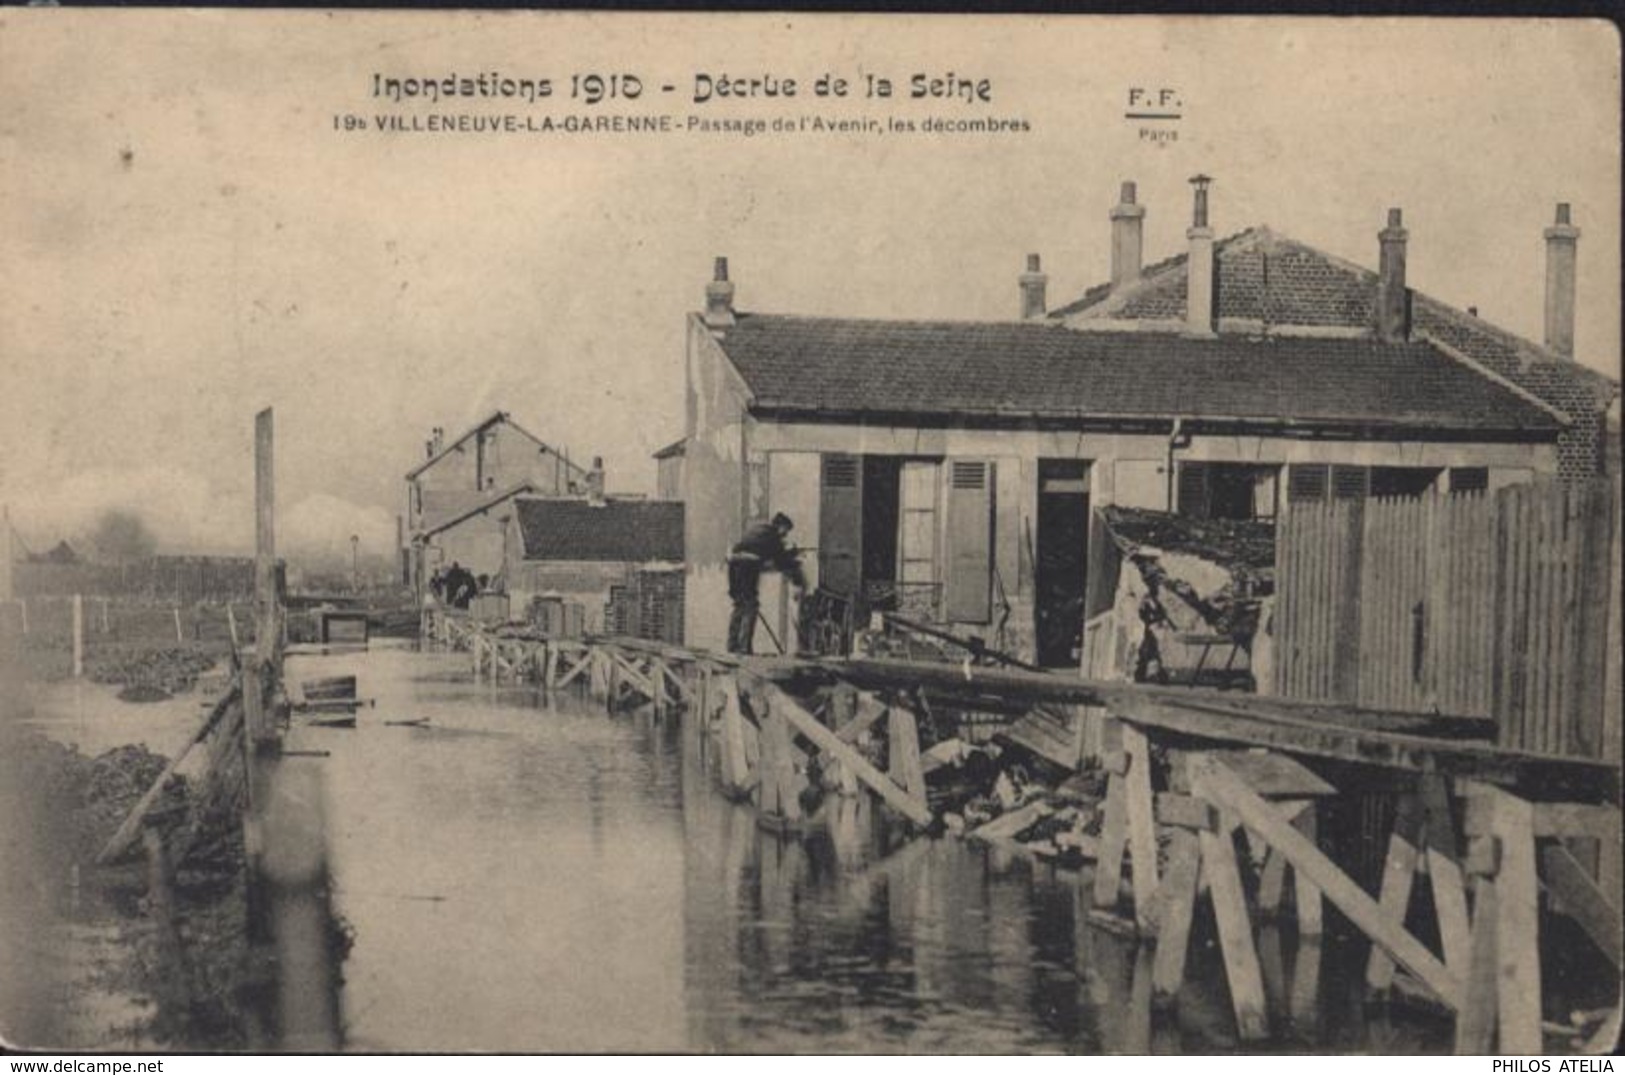 CPA Inondations 1910 Décrue De La Seine Villeneuve La Garenne Passage De L'Avenir Les Décombres F.F Paris FF - Villeneuve La Garenne